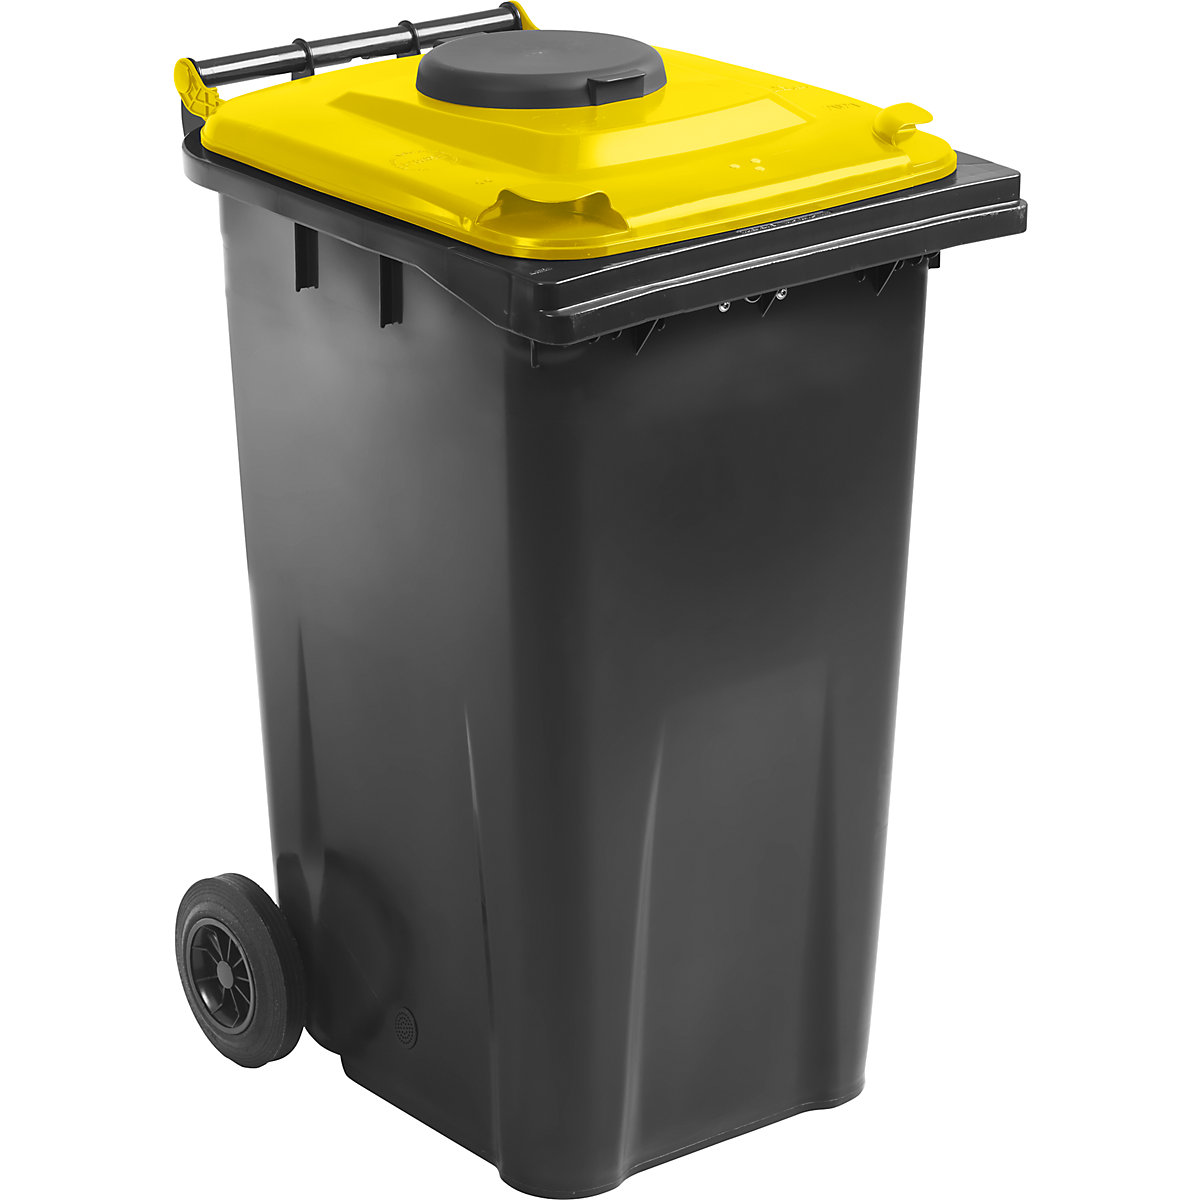 Contentor de lixo DIN EN 840 com abertura de inserção, 240 l